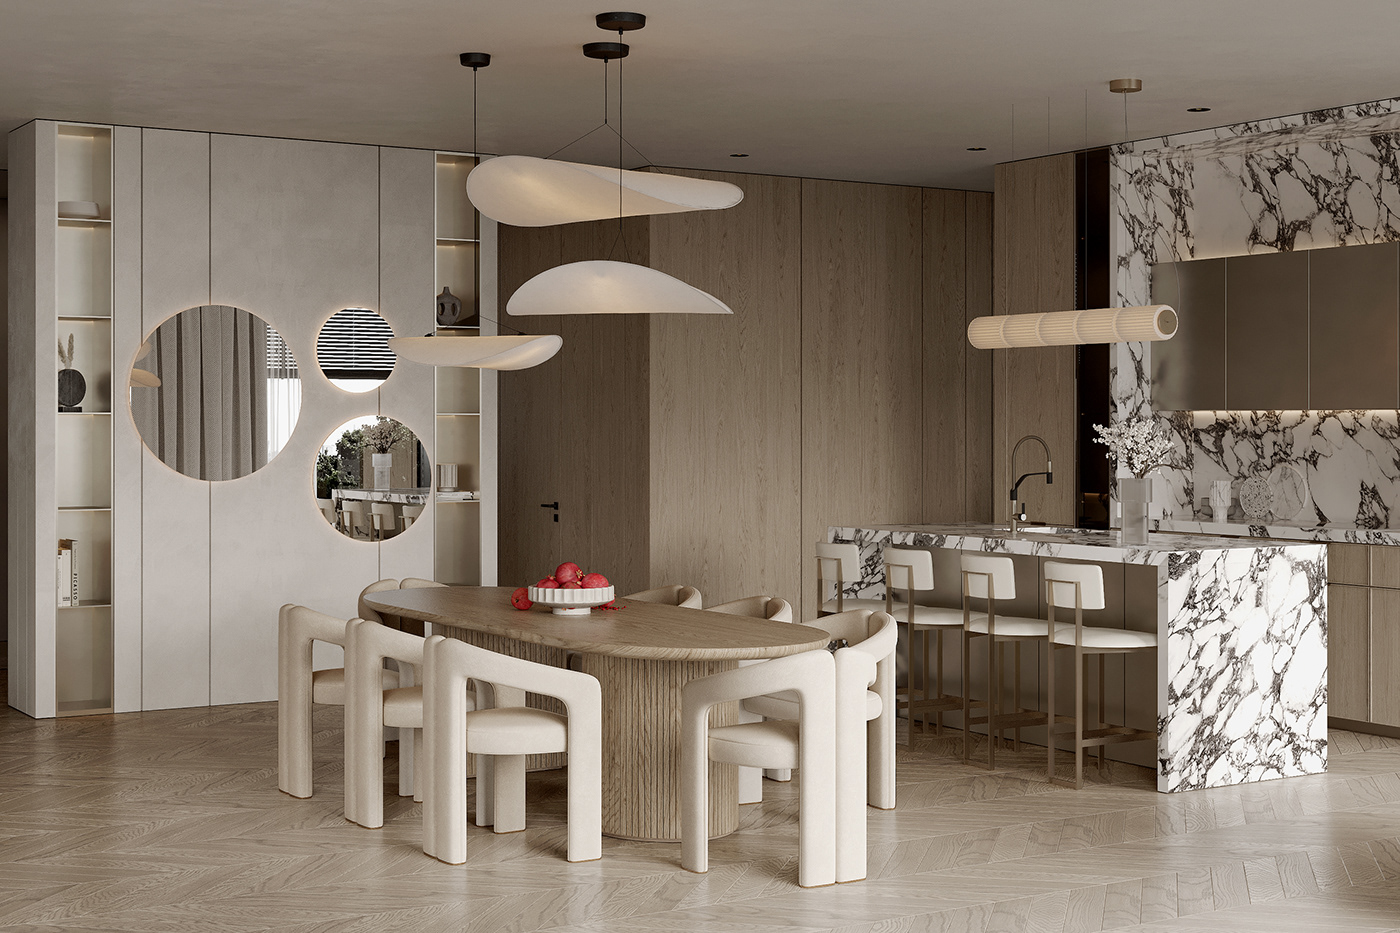 3ds max Interior interior design  Kitchen-living room Render visualization визуализация дизайн интерьера интерьер кухня-гостиная